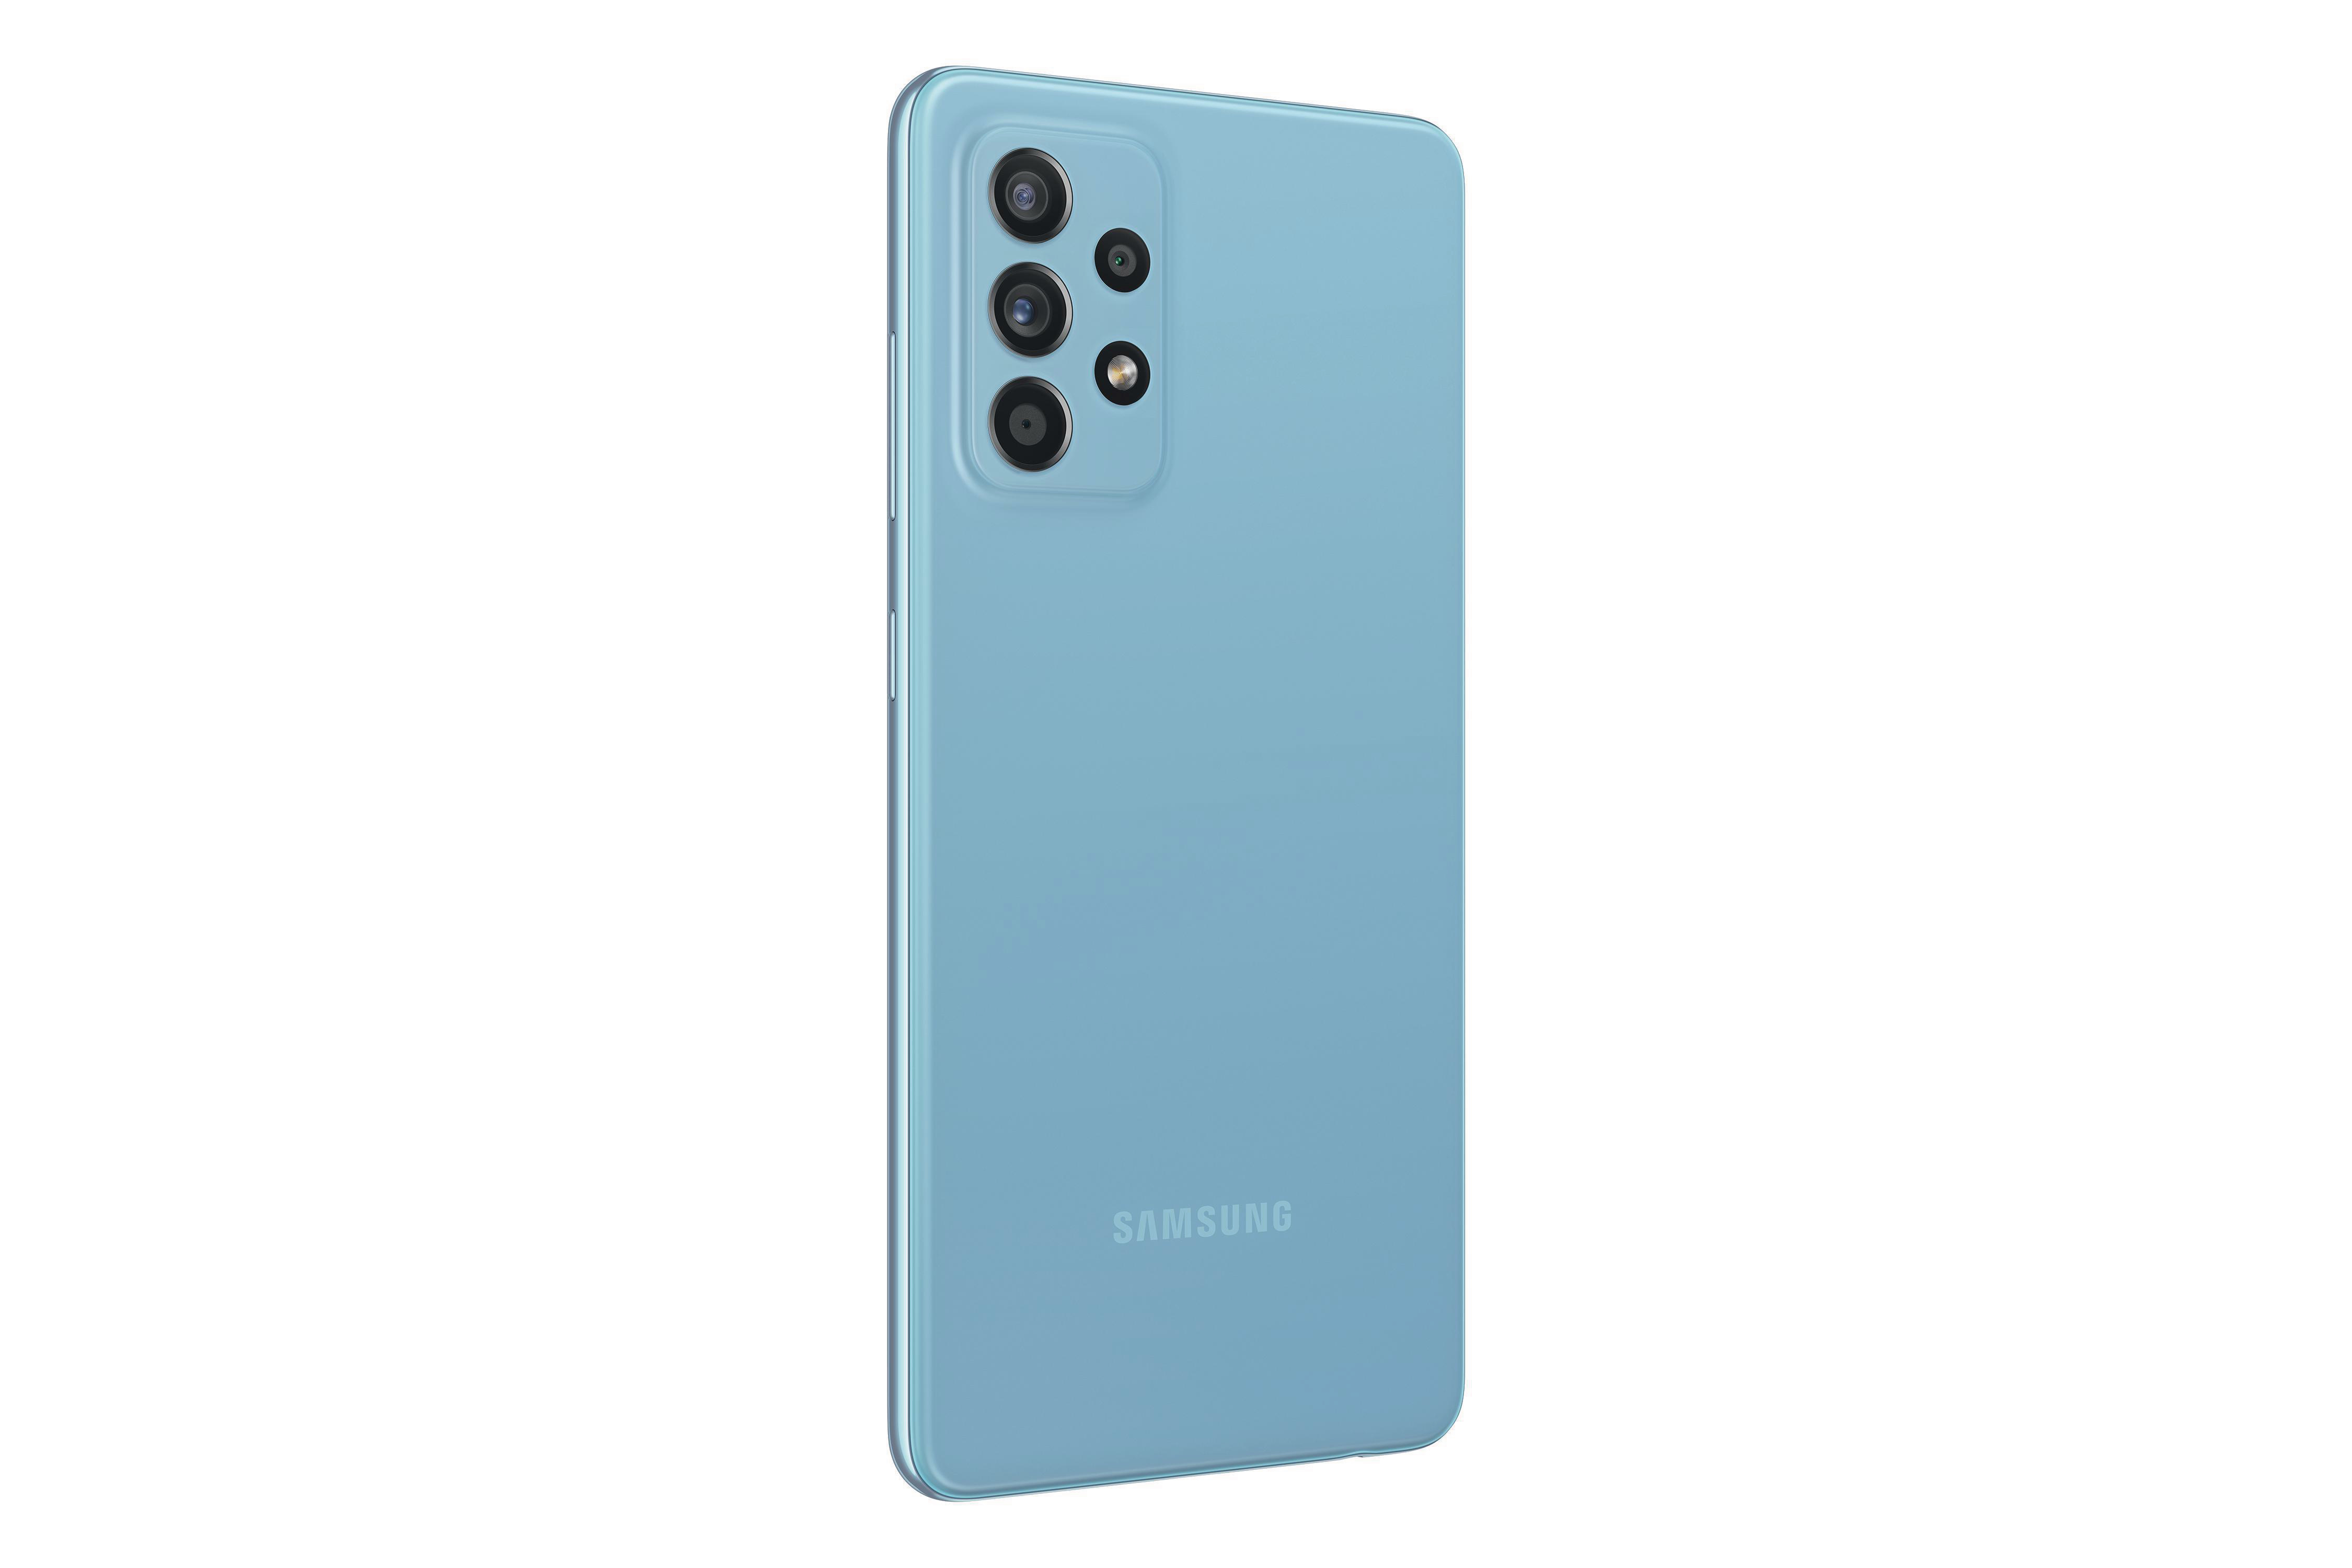 SAMSUNG Galaxy A52 GB Dual SIM Awesome Blue 256 5G